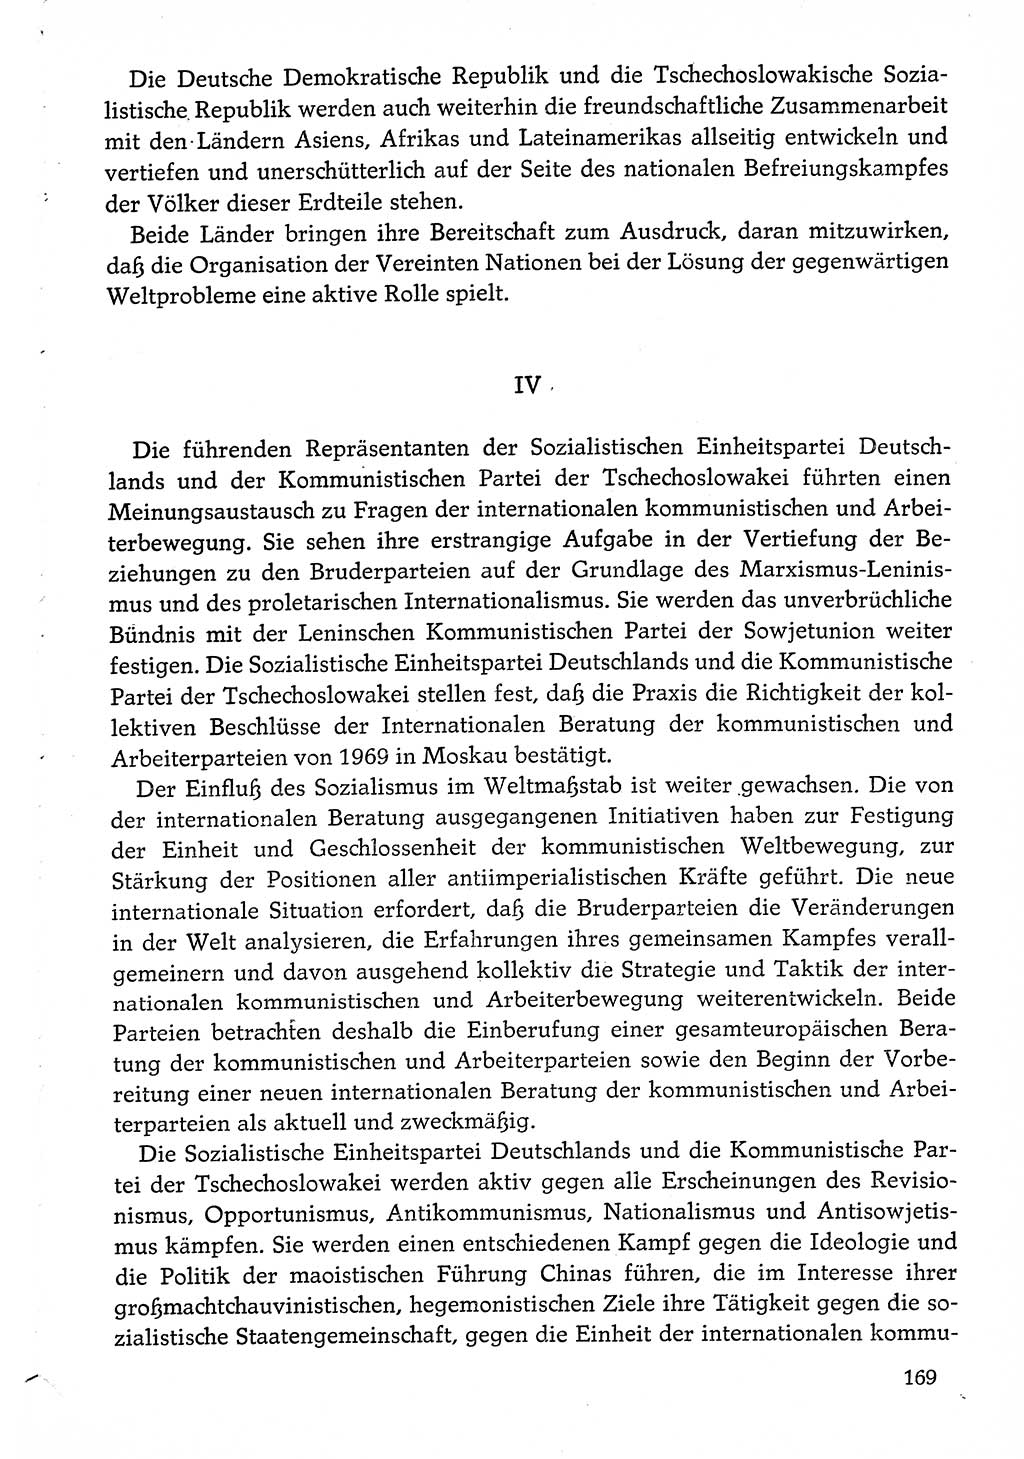 Dokumente der Sozialistischen Einheitspartei Deutschlands (SED) [Deutsche Demokratische Republik (DDR)] 1974-1975, Seite 169 (Dok. SED DDR 1978, Bd. ⅩⅤ, S. 169)